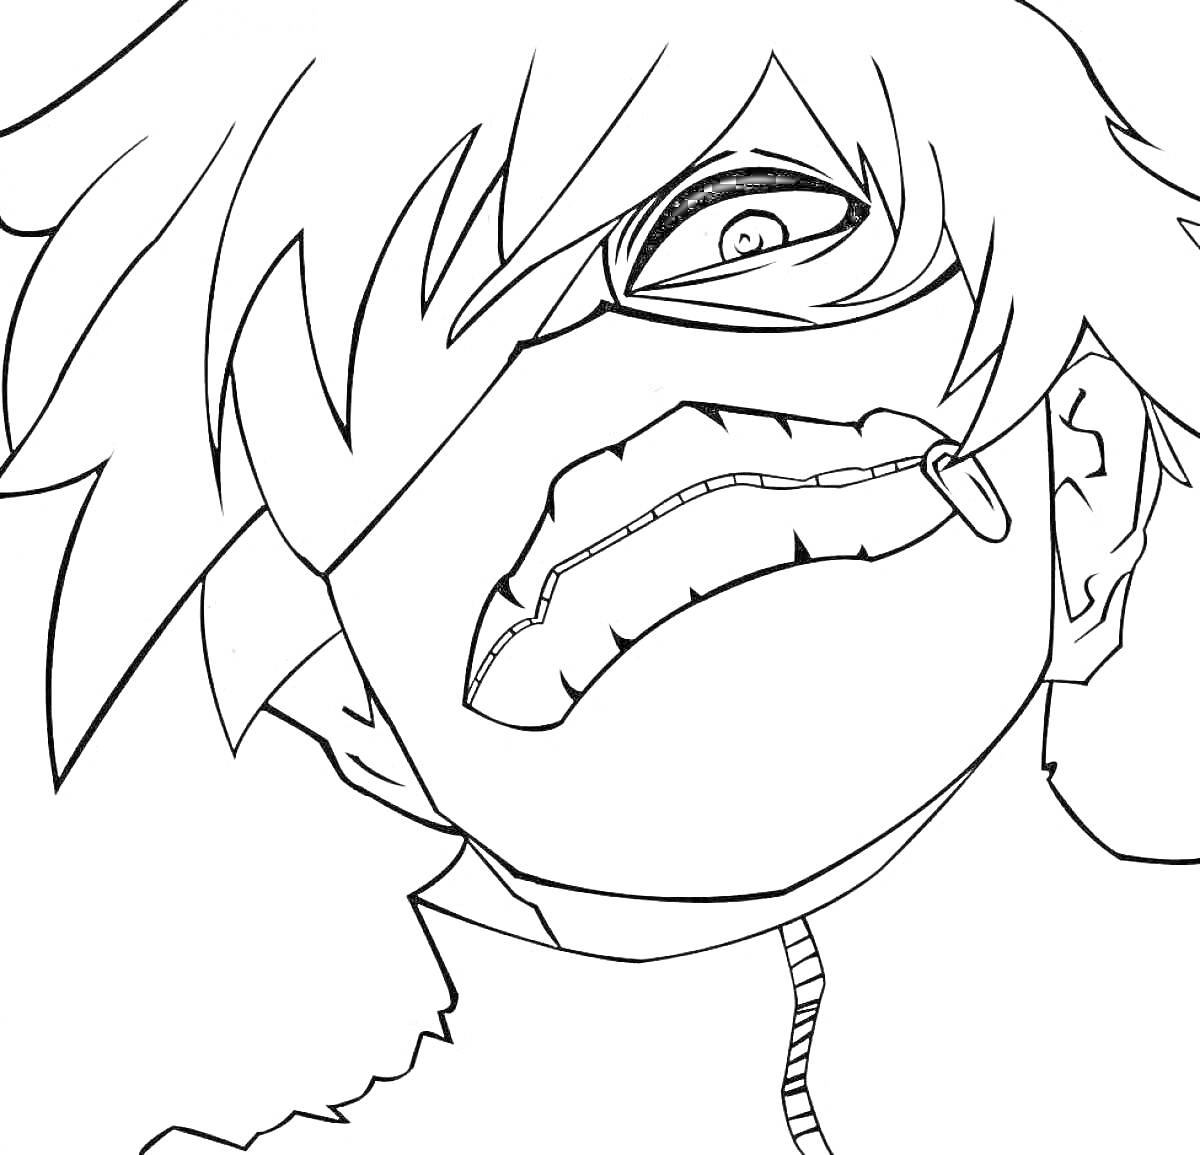 Раскраска Аниме персонаж с маской, одним закрытым глазом и швами на лице